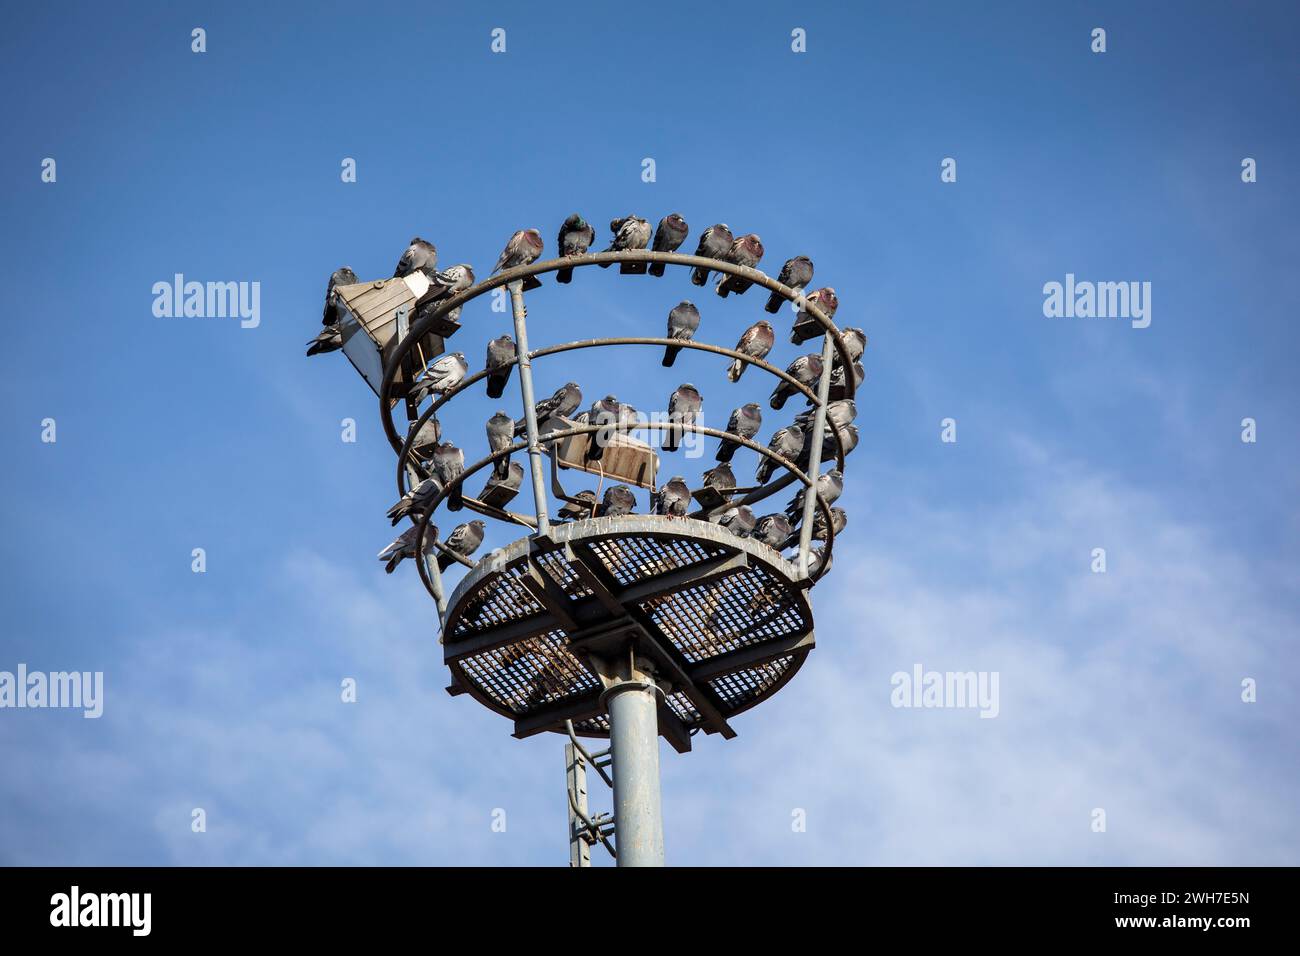 pigeons sitting on an old floodlight mast in the port Deutz, Cologne, Germany. Tauben sitzen auf einem alten Scheinwerfermast im Deutzer Hafen, Koeln, Stock Photo